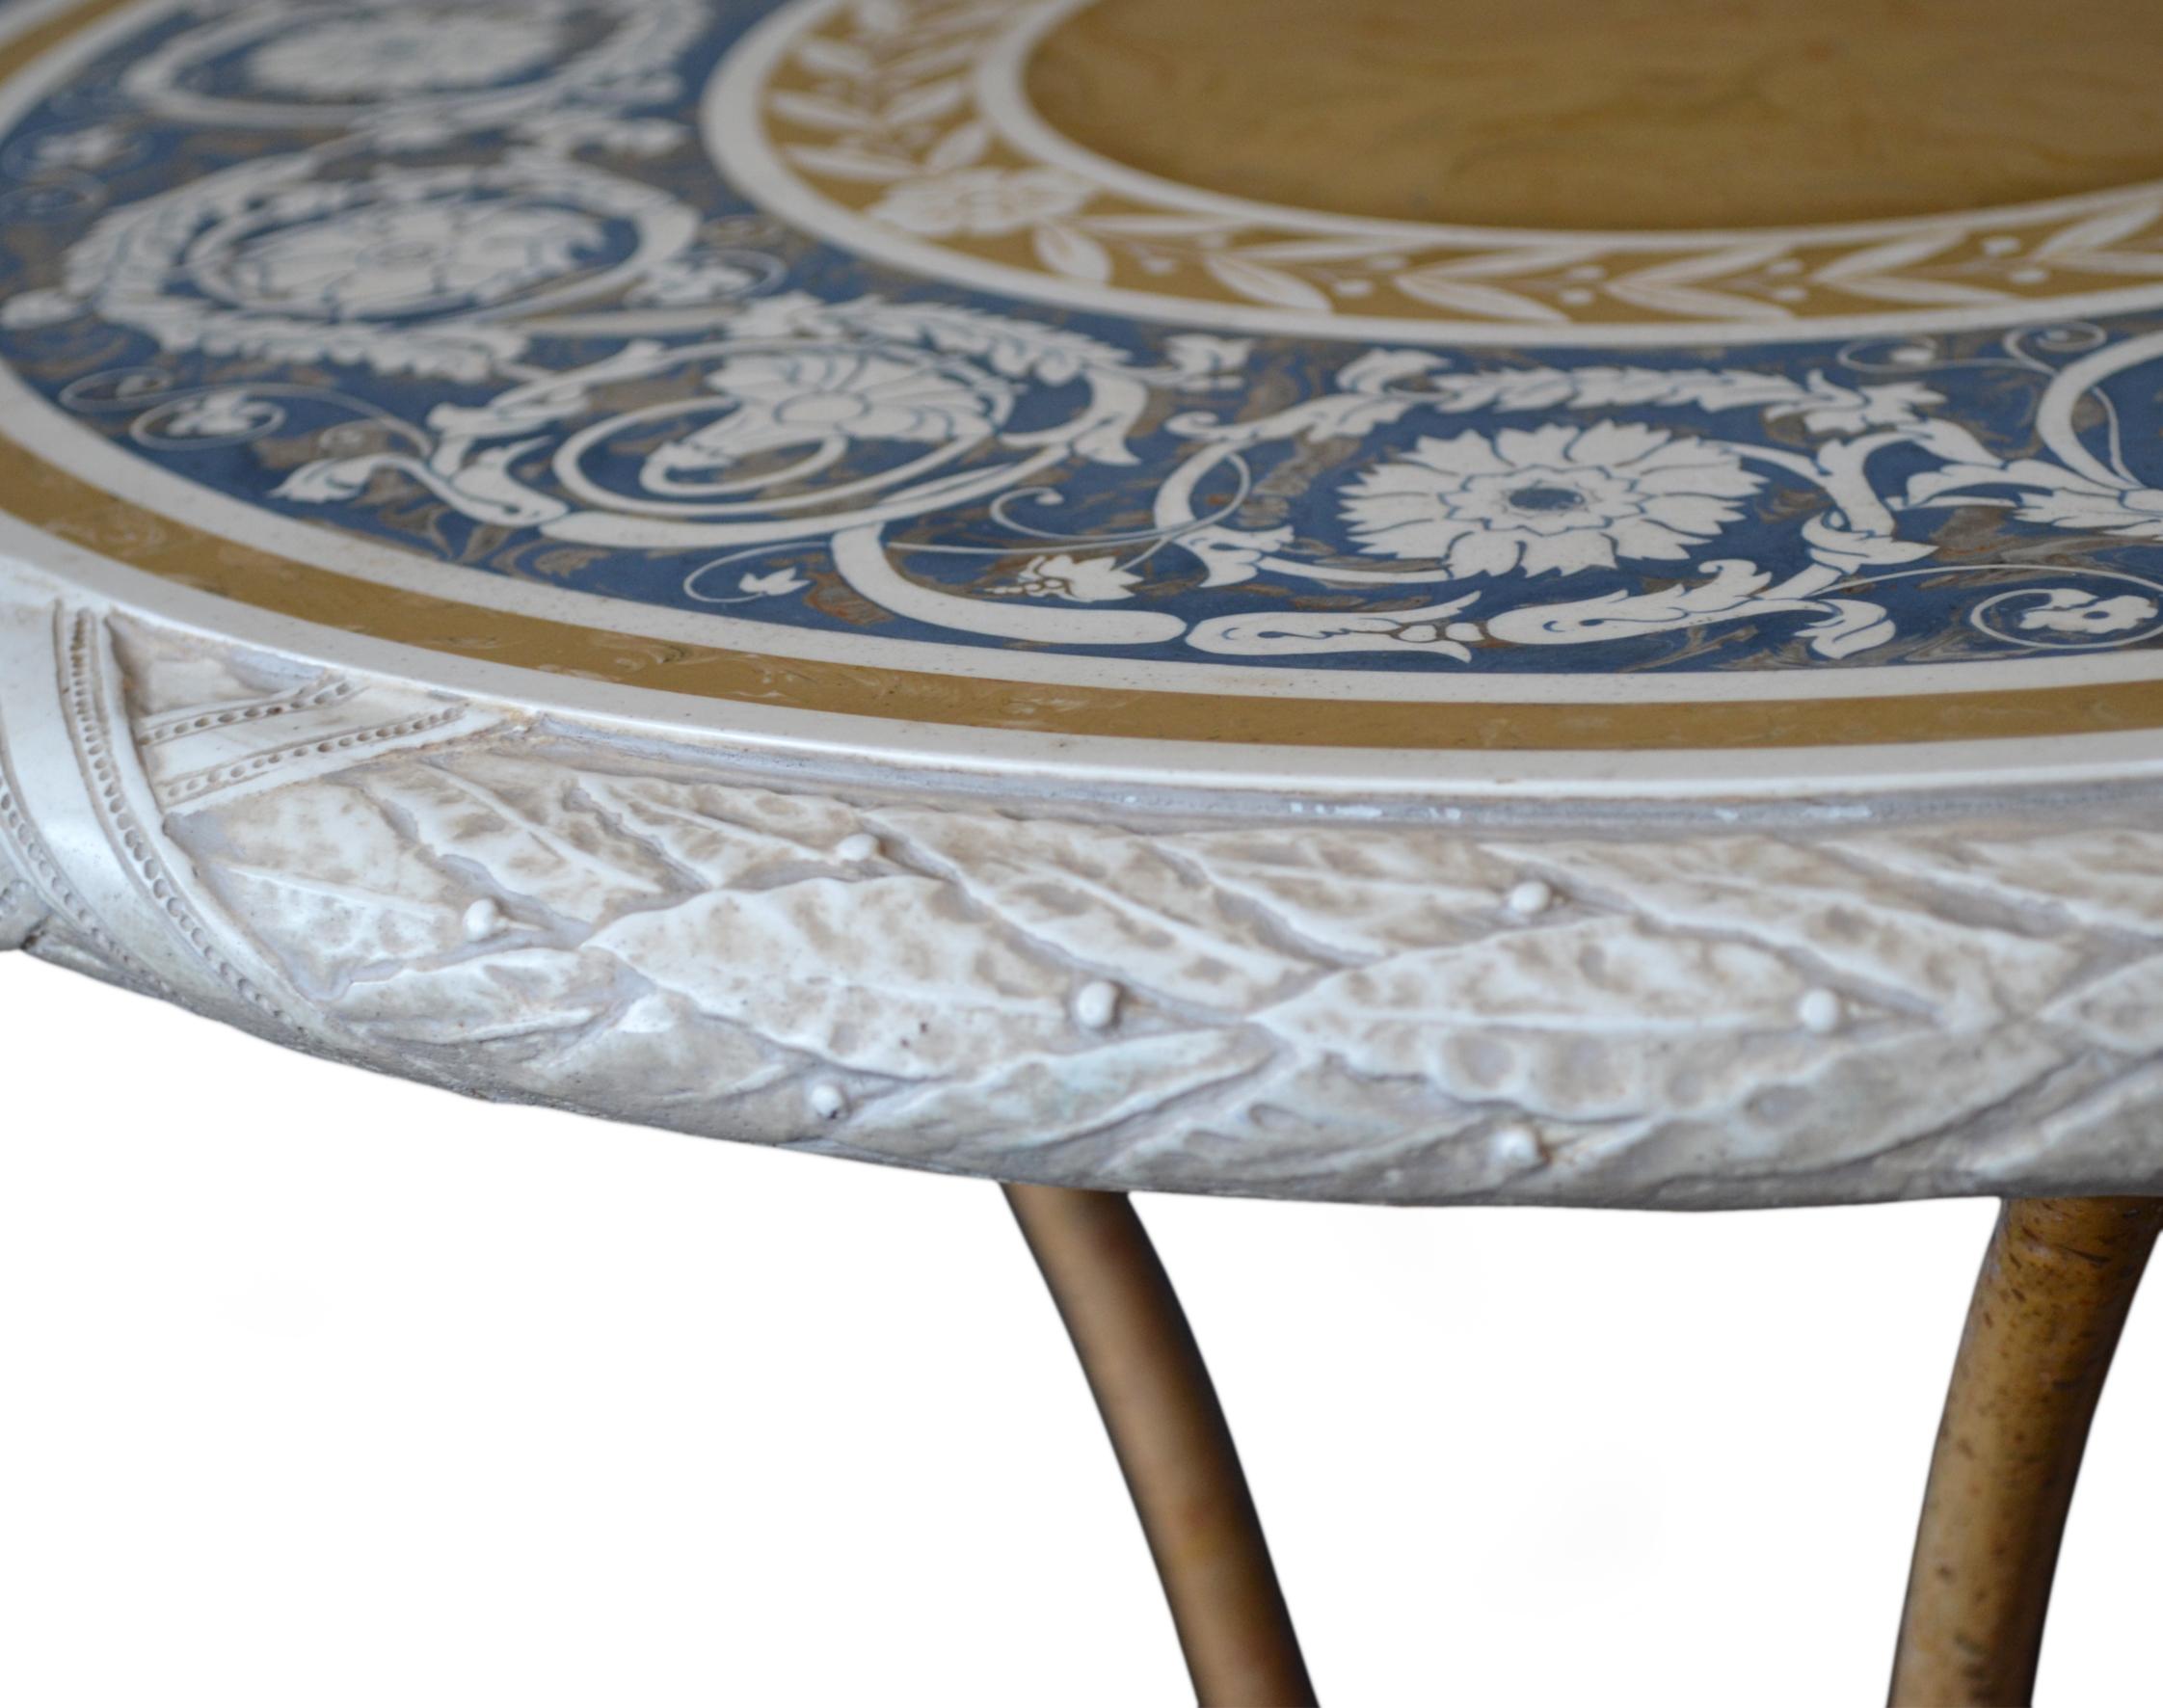 Dieser Tisch kann als Teetisch, Beistelltisch, Lampentisch verwendet werden, er ist vielseitig einsetzbar.
Die Platte ist in Scagliola-Kunstintarsie gefertigt, der gleichen Technik des 